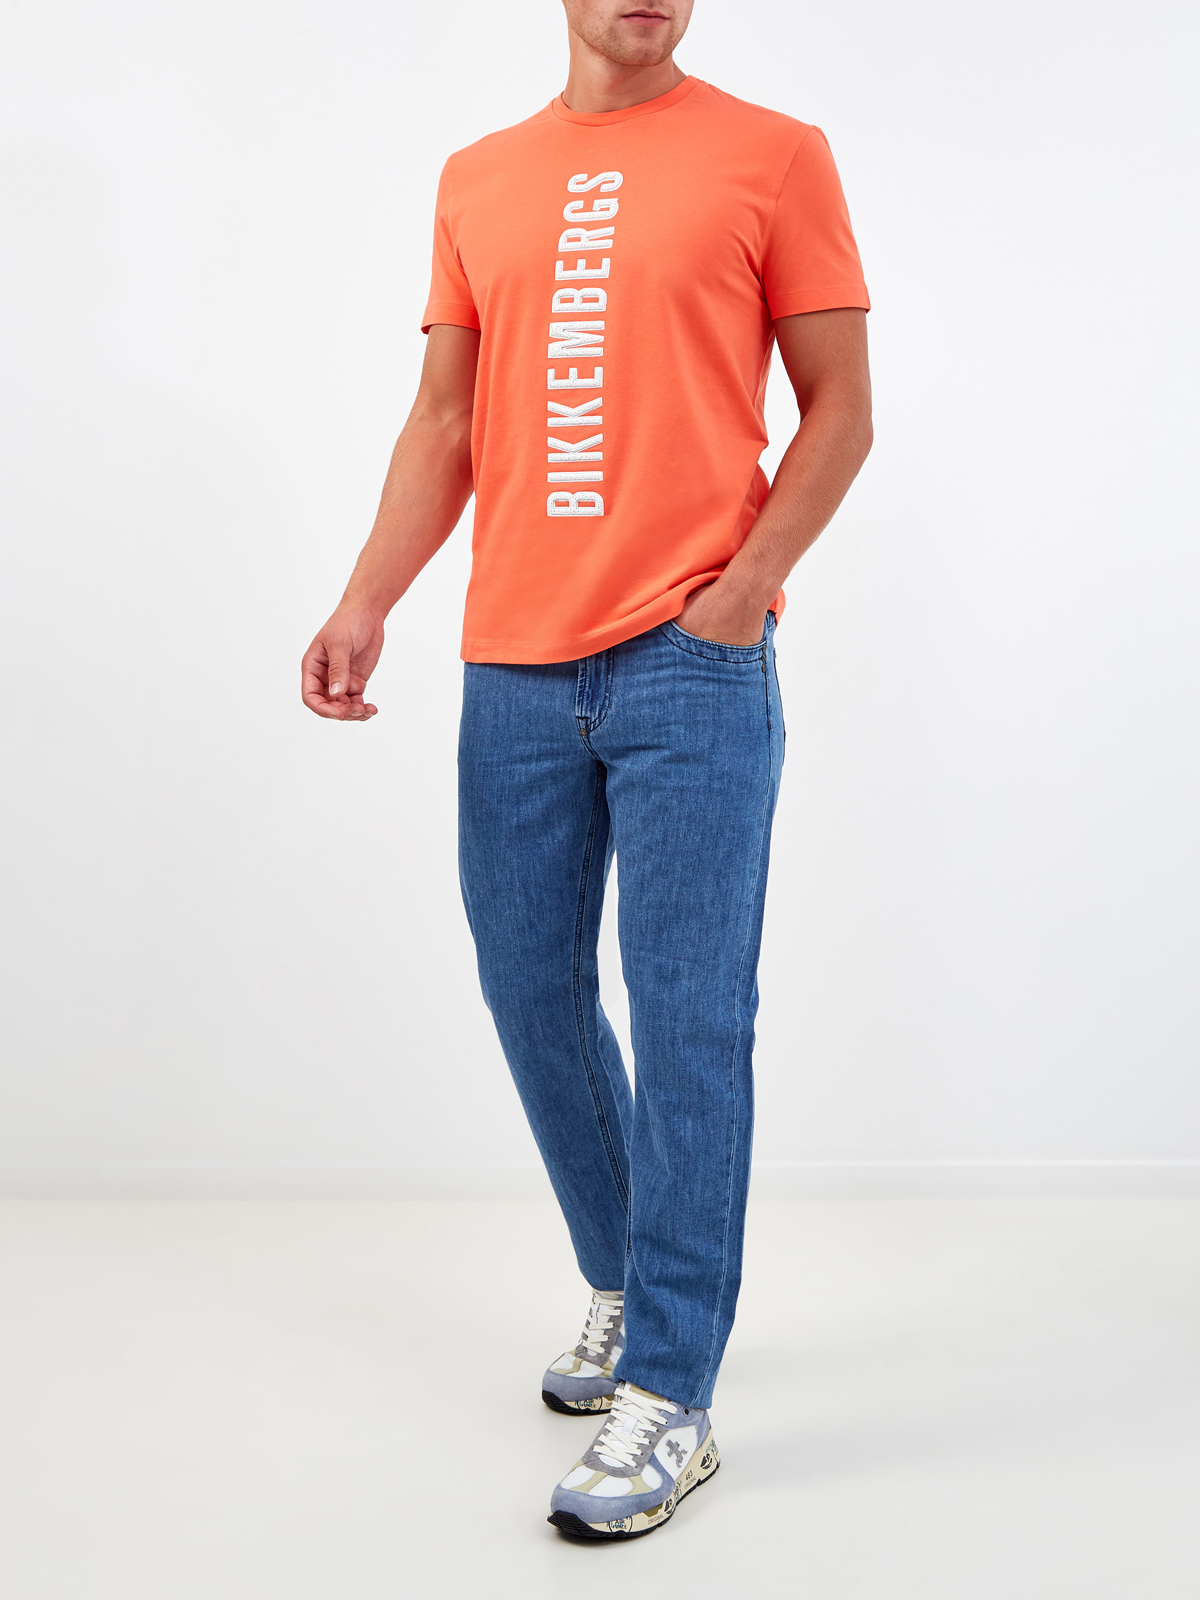 Яркая футболка из хлопка с фактурным логотипом BIKKEMBERGS, цвет оранжевый, размер M;2XL;3XL - фото 2